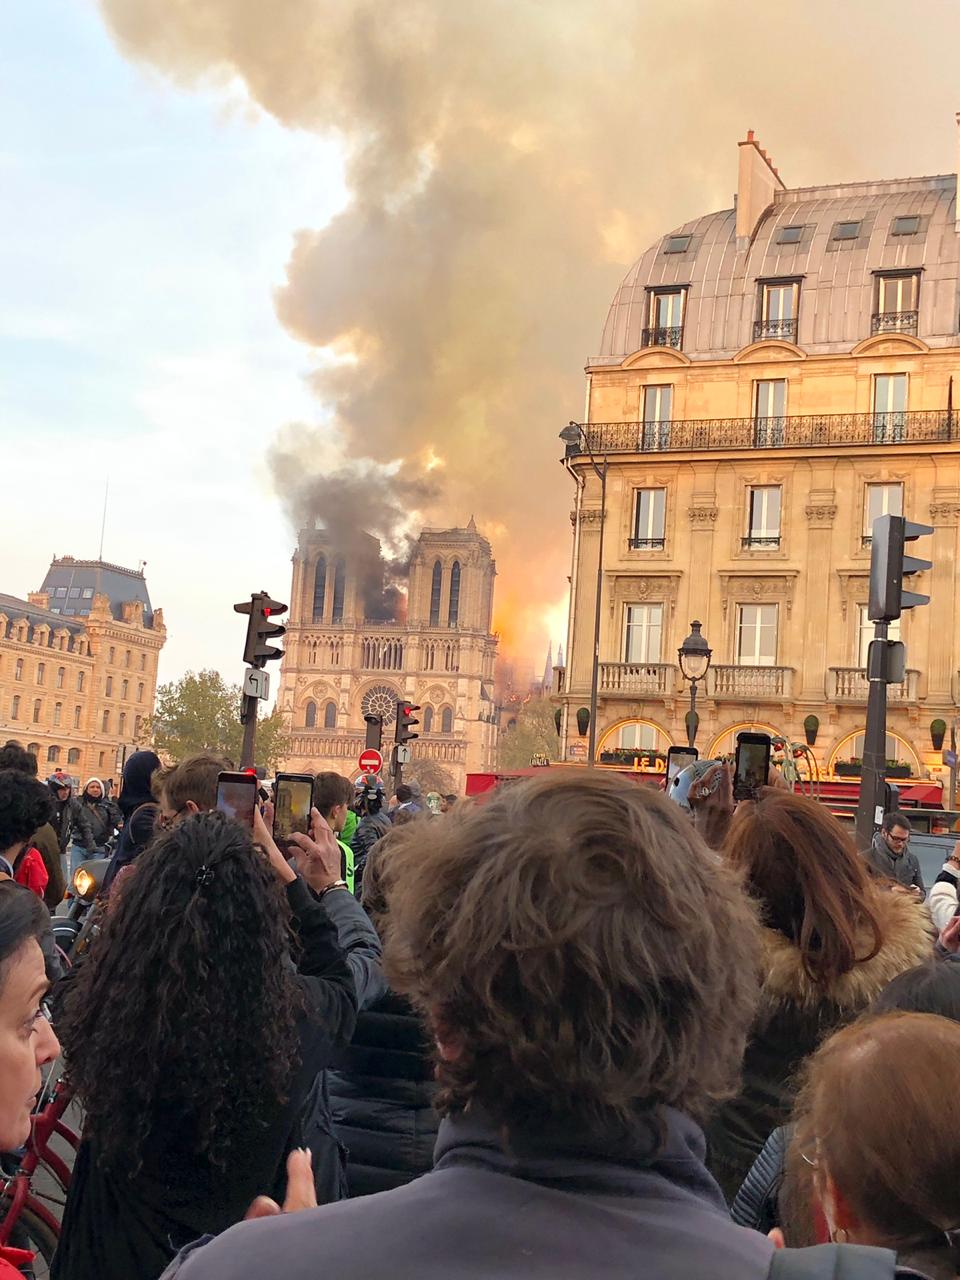 Testigos toman imágenes del incendio de la catedral de Notre Dame. | Foto: Wikipedia